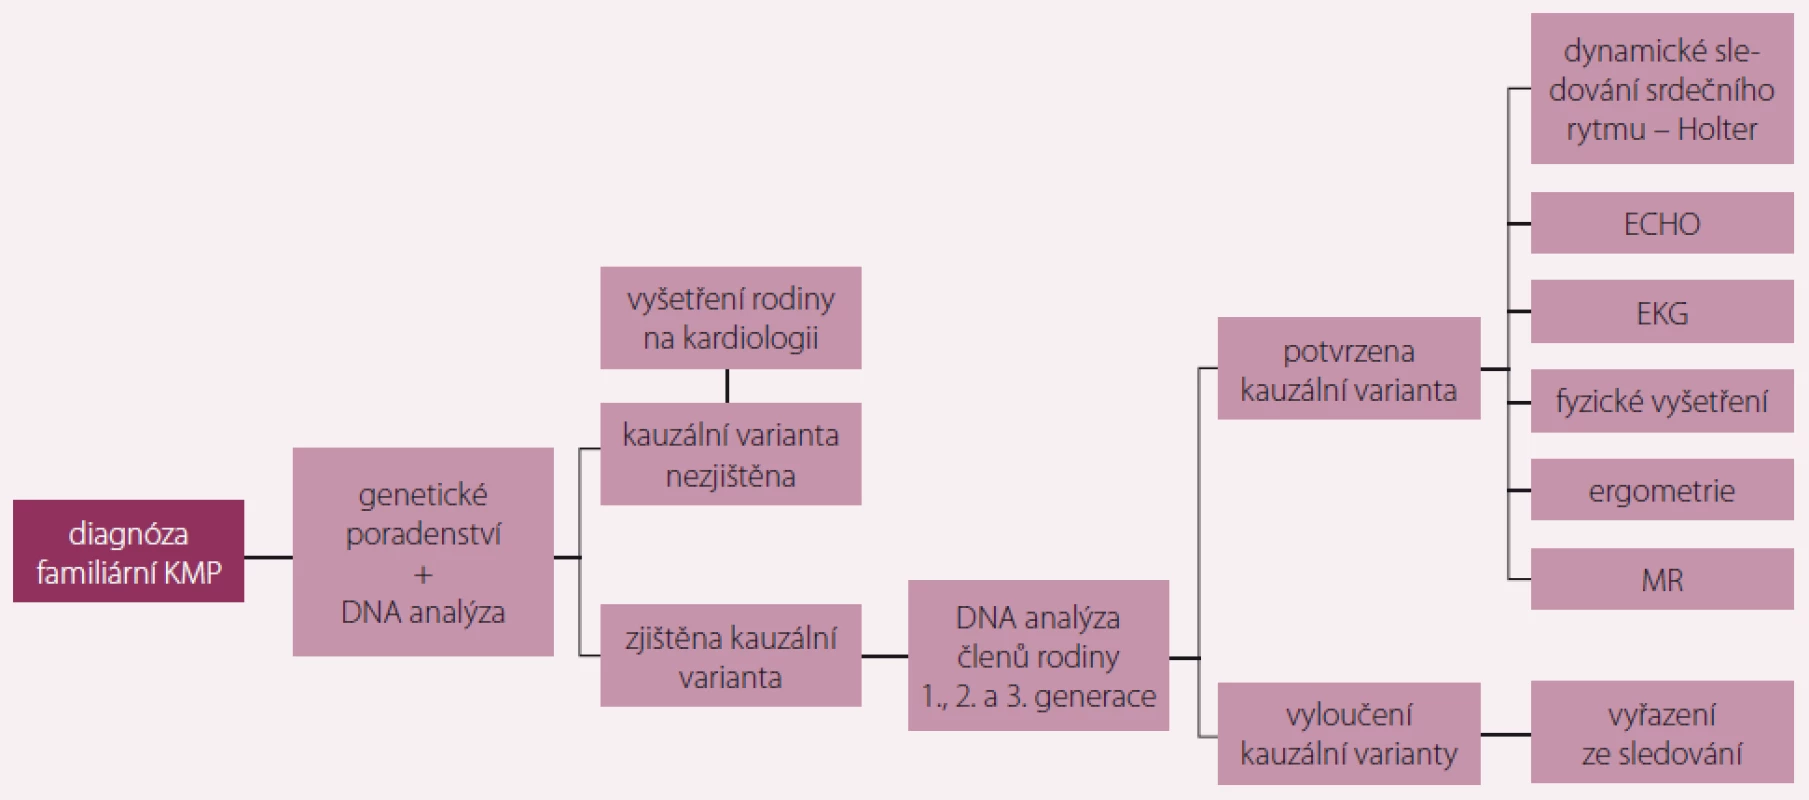 Doporučený algoritmus vyšetřování příbuzných pacienta s dědičným typem kardiomyopatie (KMP).